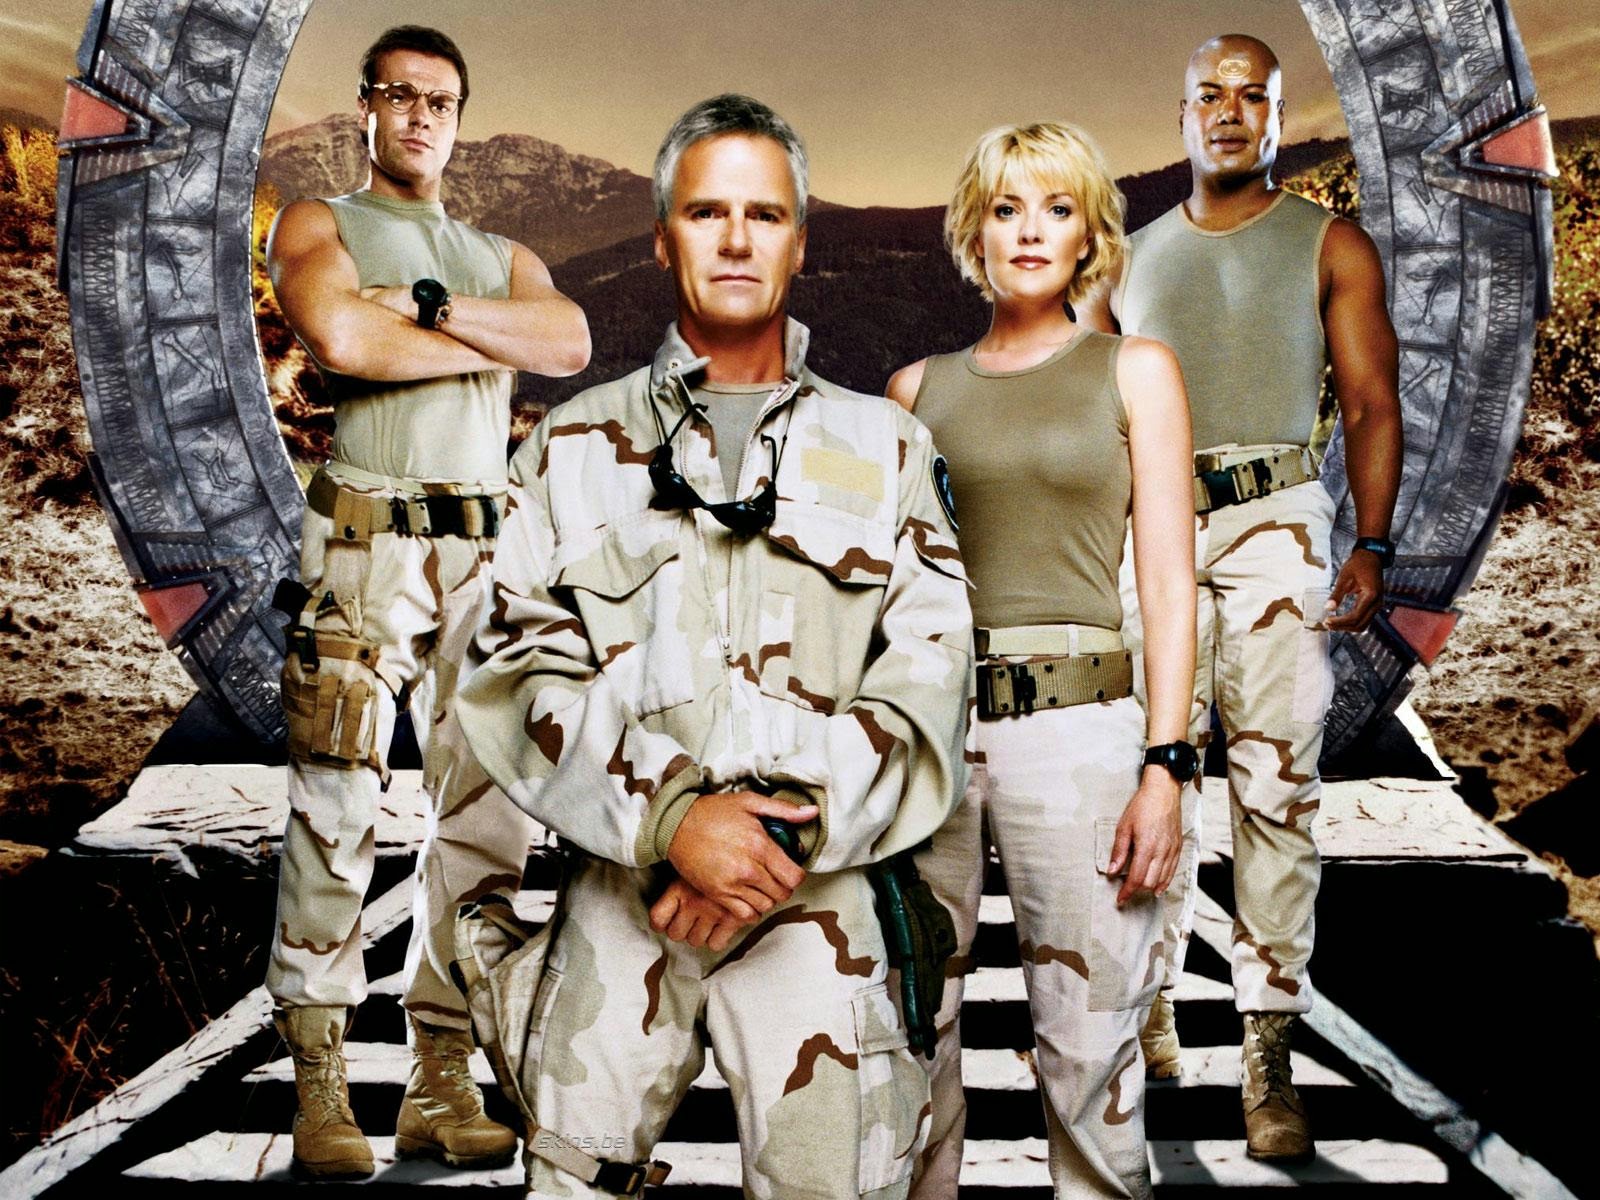 DormaineGblog: Still missing Stargate SG1